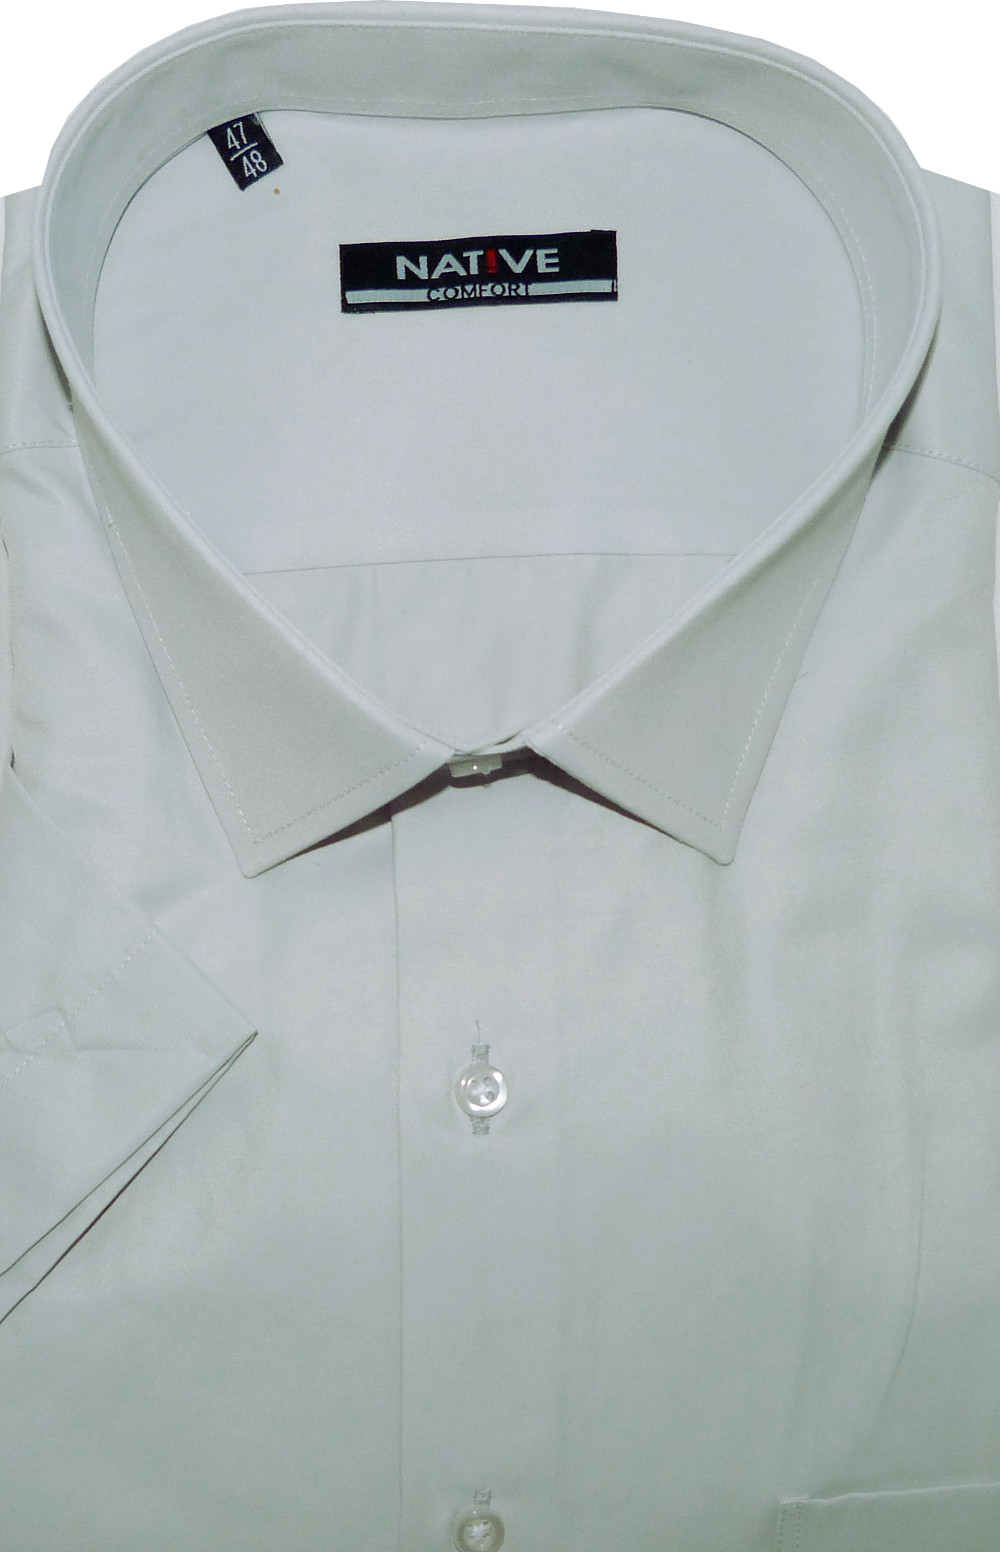 Pánská košile (šedá) s krátkým rukávem, vel. 43/44 - Native N901/012